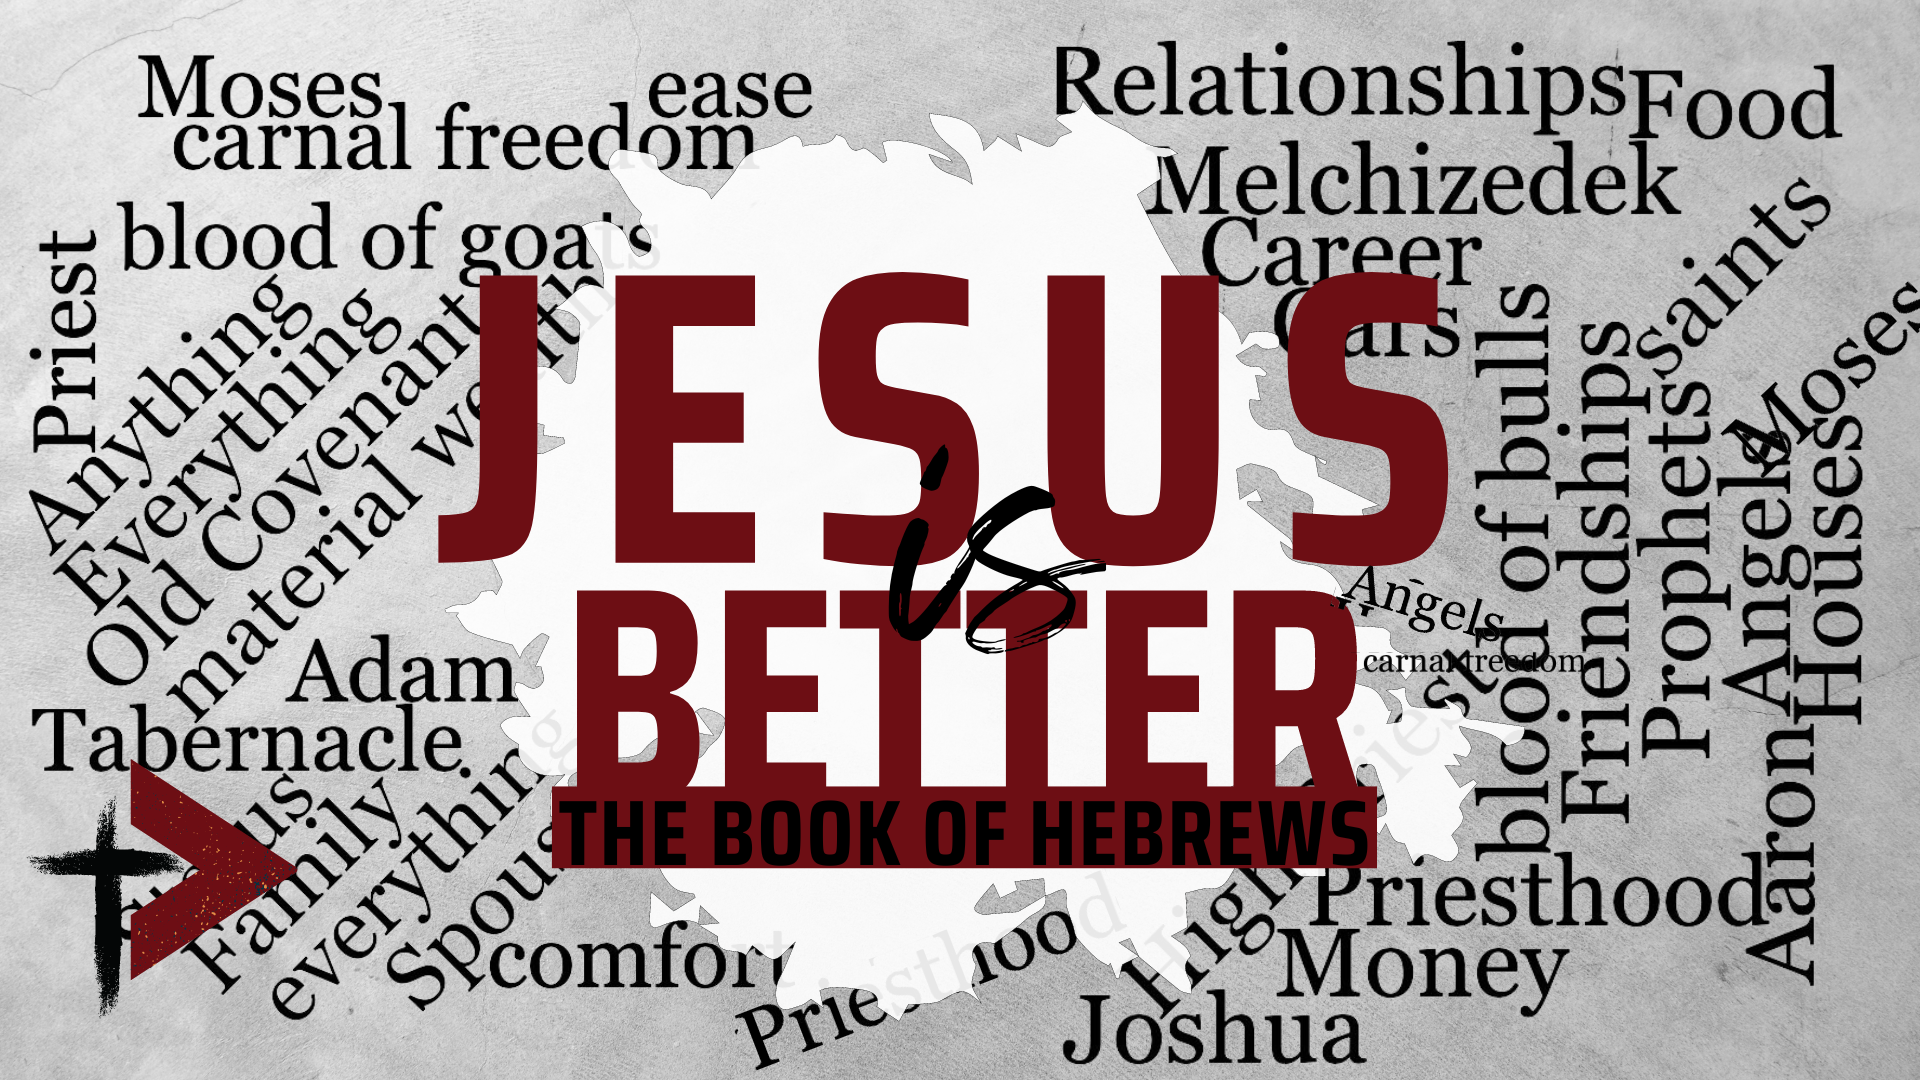 Jesus is Better